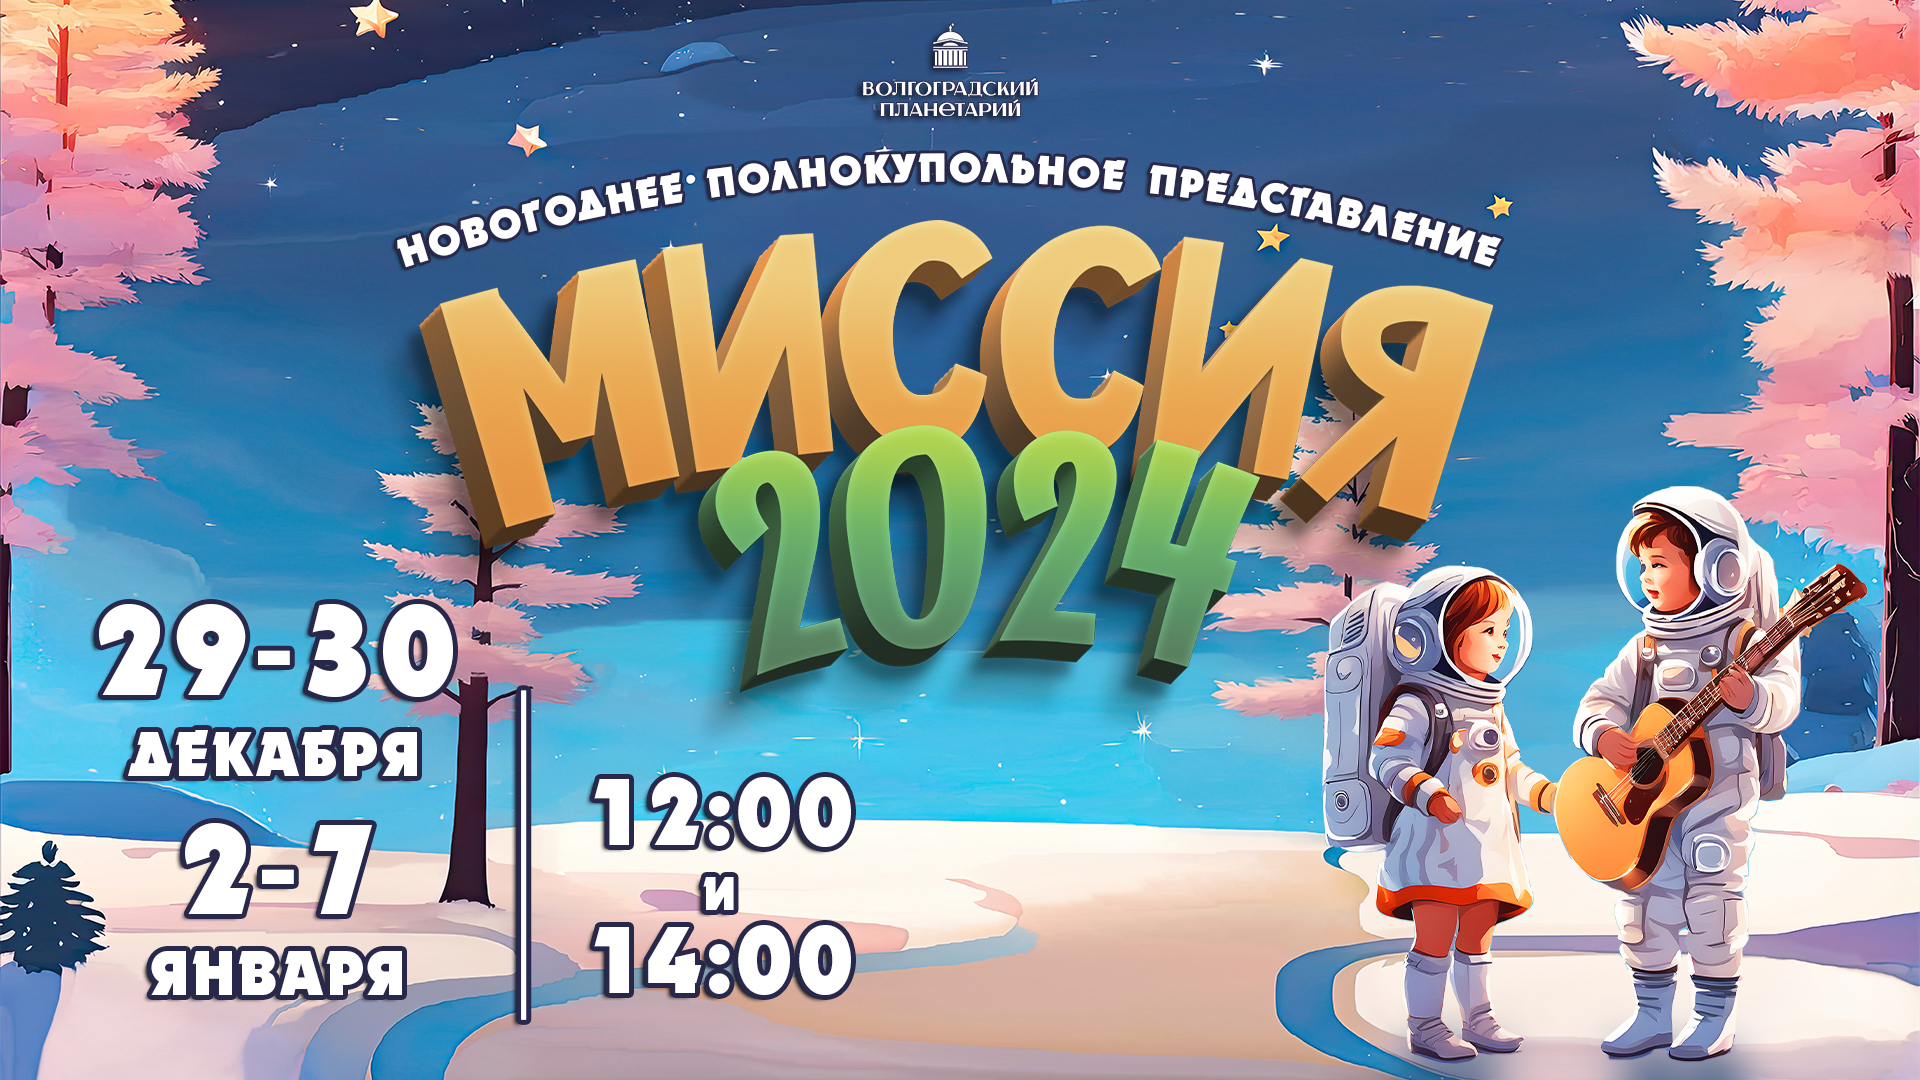 Музыкальное полнокупольное представление Волгоградского планетария "Миссия 2024"